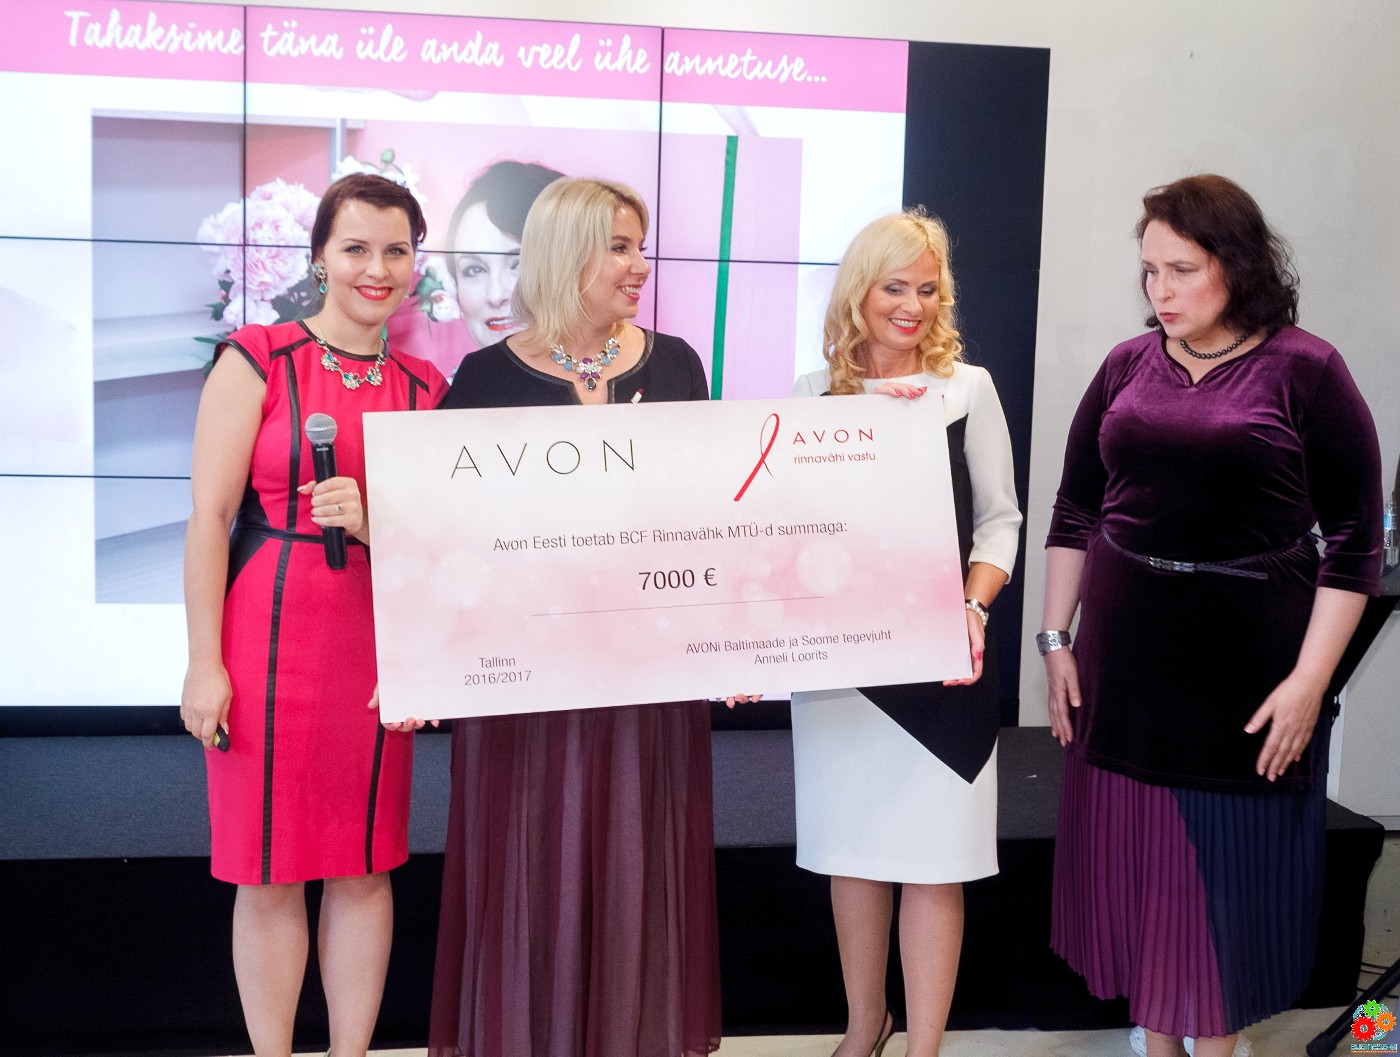 Avon Eesti: Юбилей и благотворительность